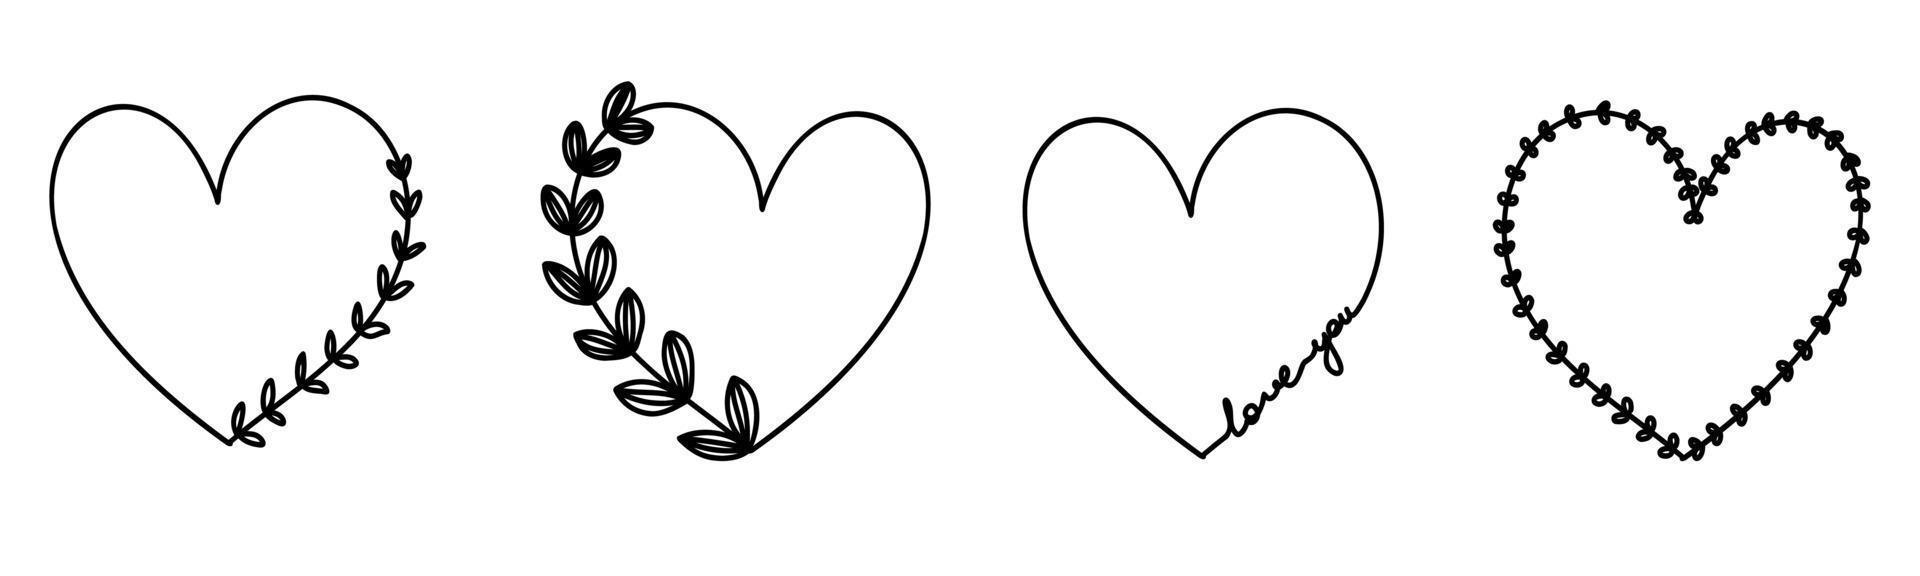 Gekritzelherzrahmen stellten Liebe Sie Texthand gezeichnet ein. valentinstag für hochzeit isolierte pflanzensammlung. vektor